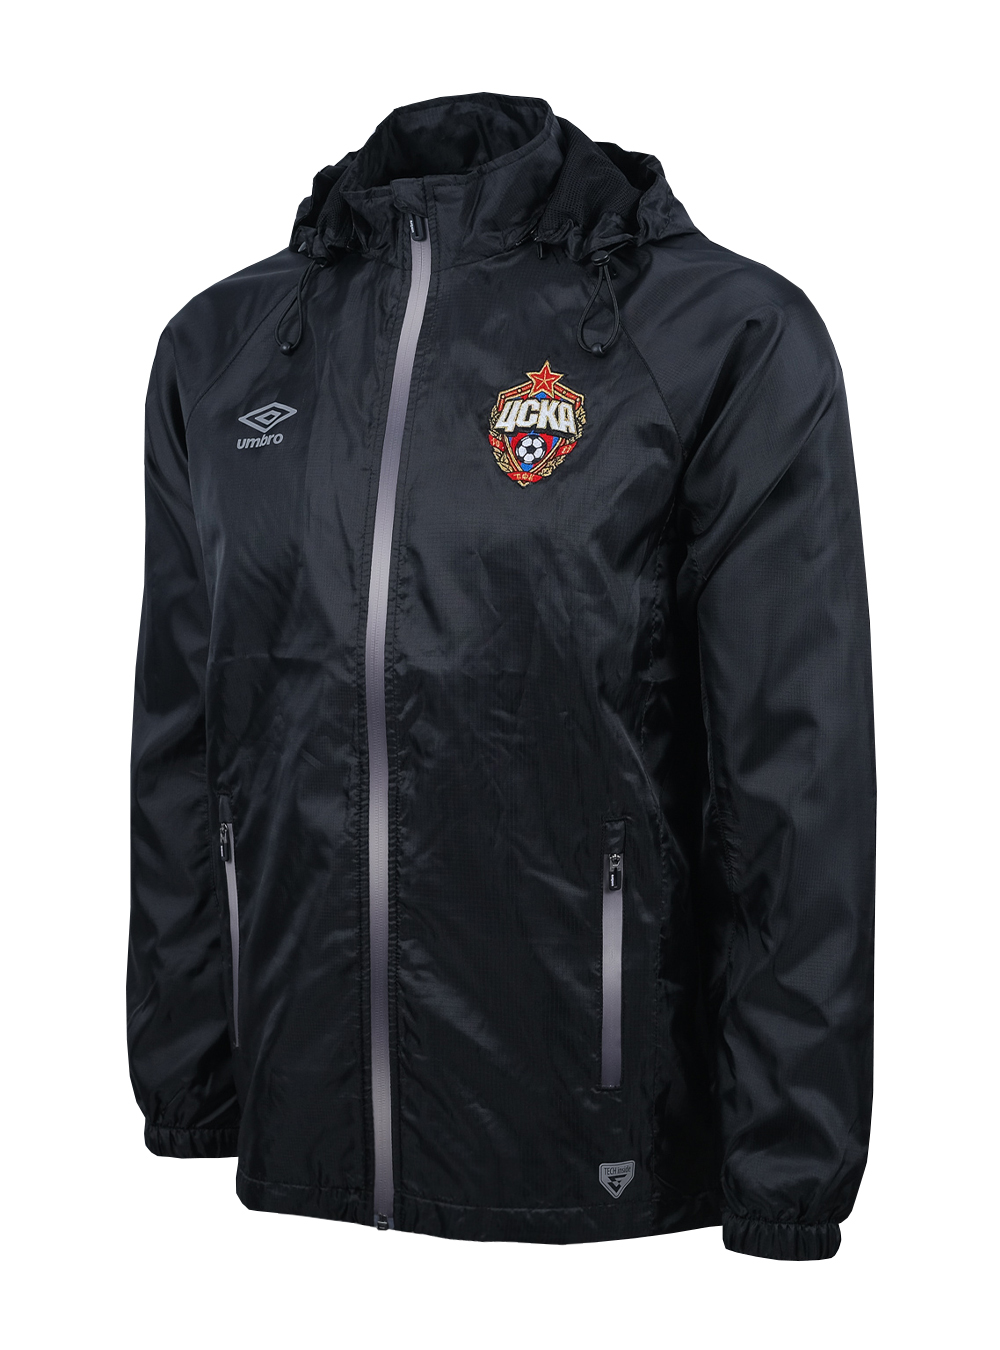 Купить Костюм ветрозащитный (куртка), черный/серебро (S) по Нижнему Новгороду